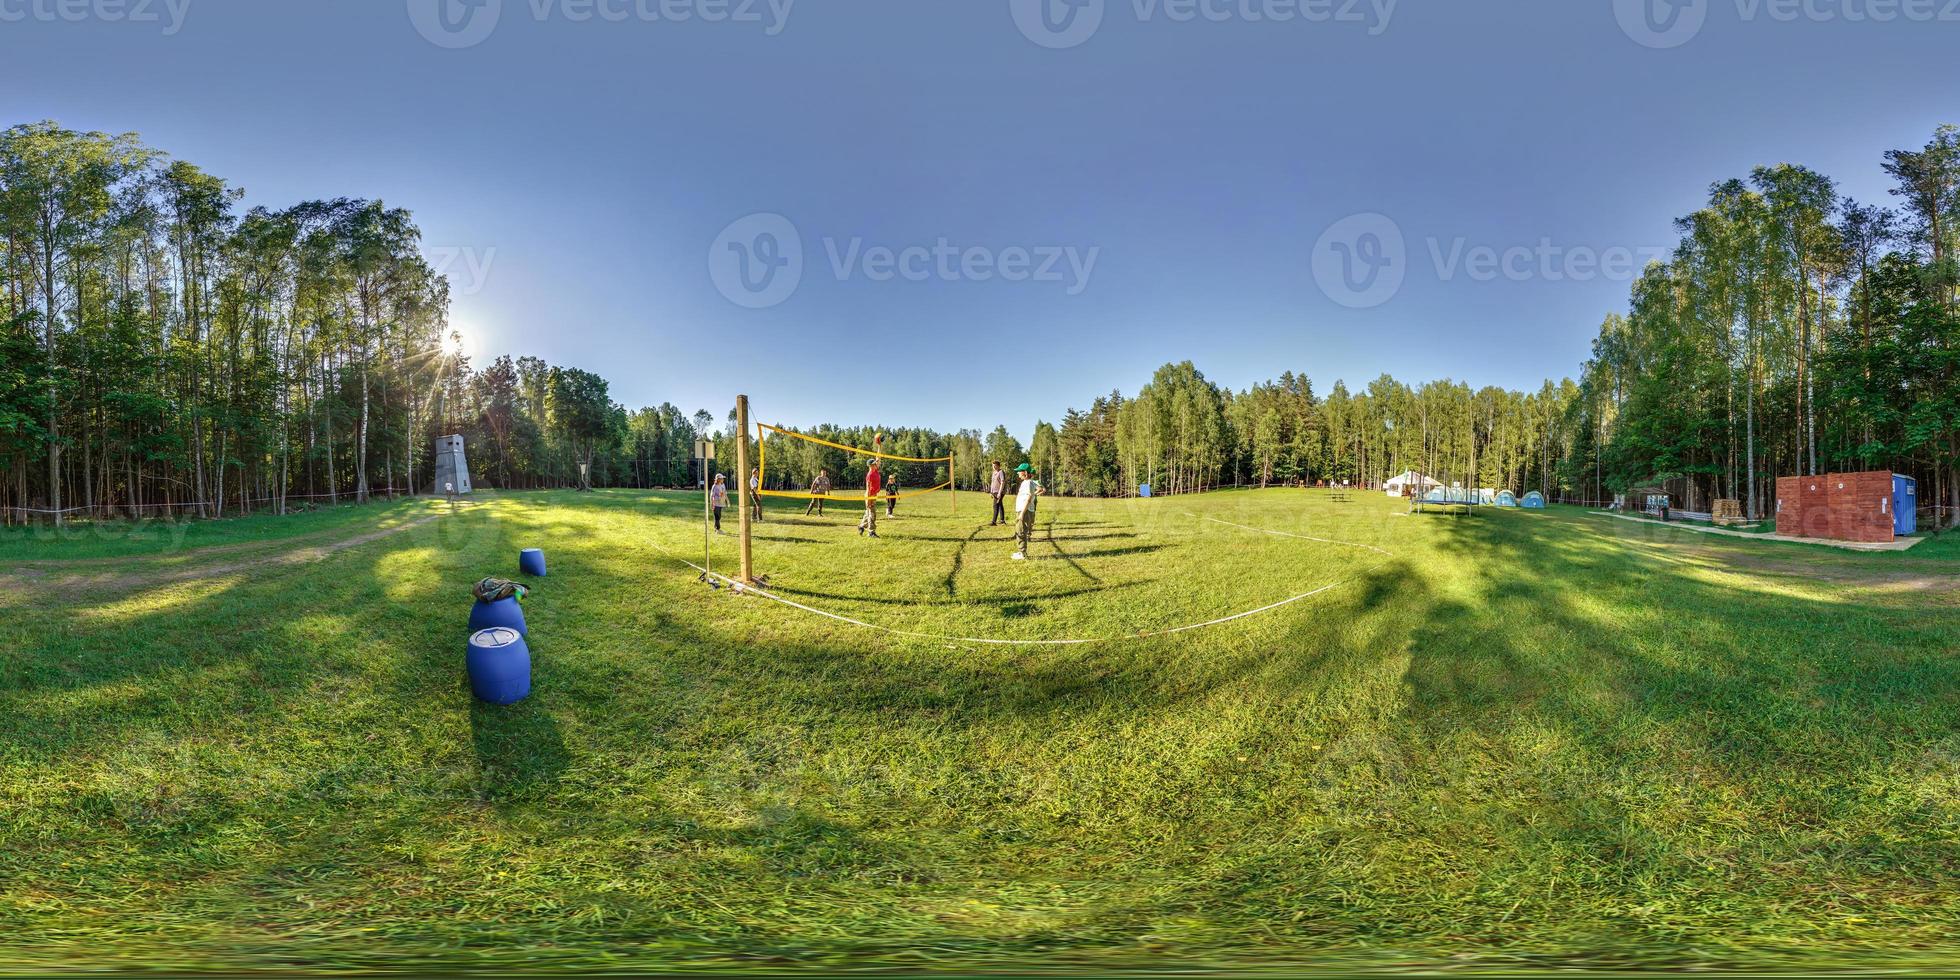 full sömlös sfärisk hdr 360 panorama grupp av pionjärer eller pojke spejdare spelar volleyboll i skog läger med sporter jord i likriktad utsprång, vr ar innehåll foto